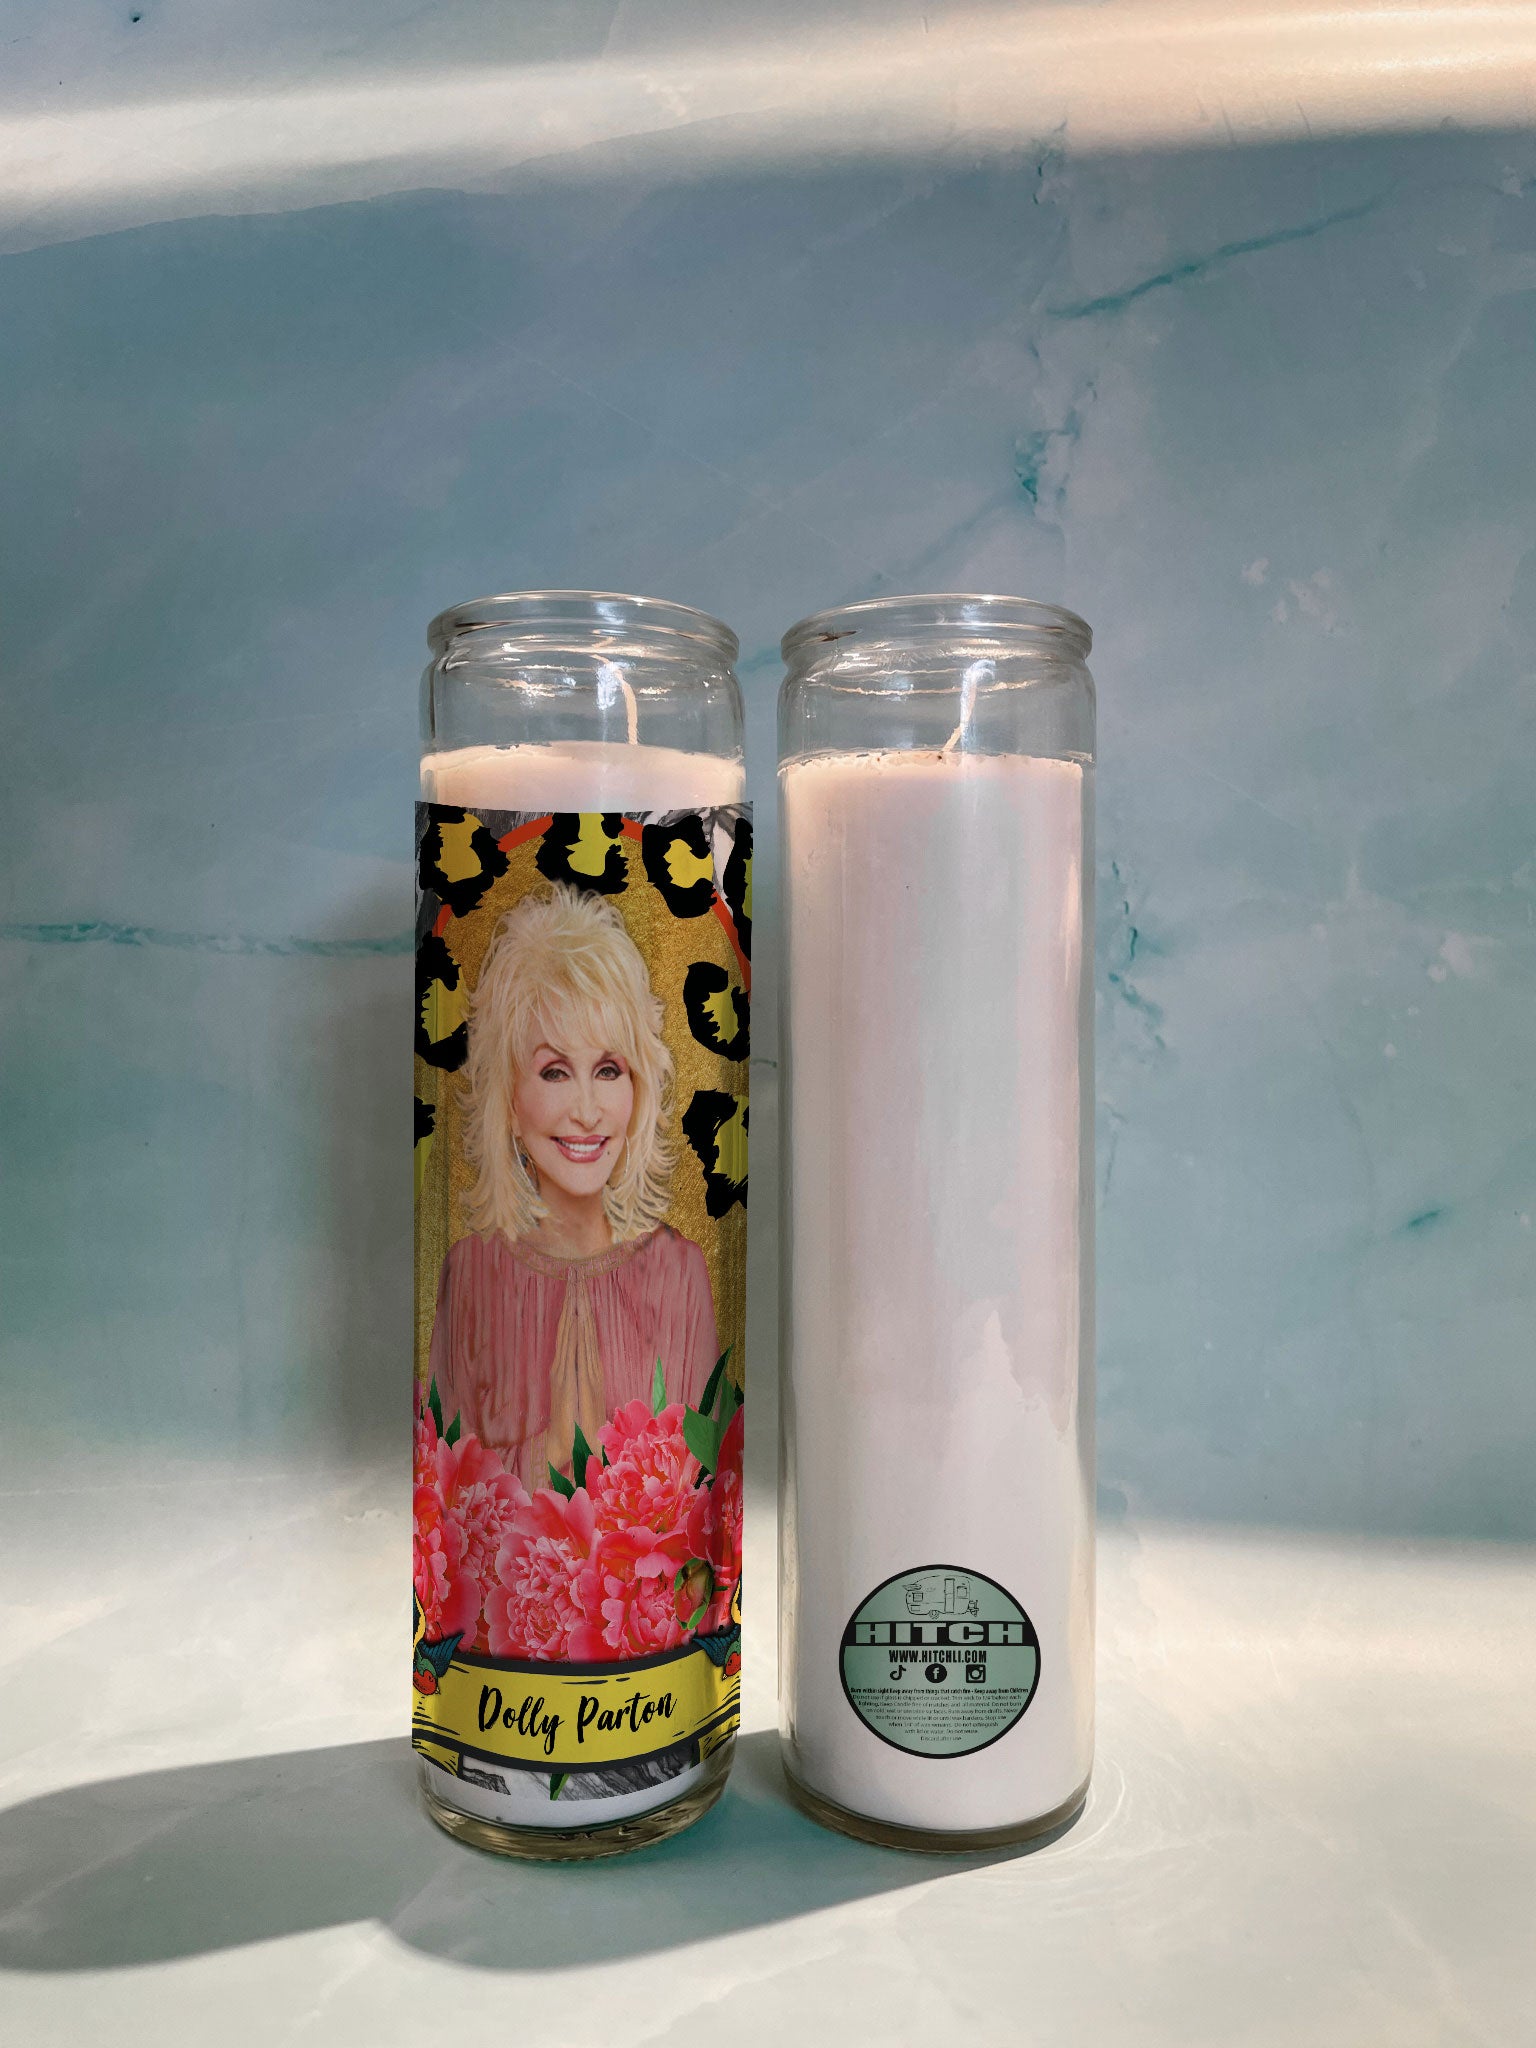 Dolly Parton Original Prayer Candle